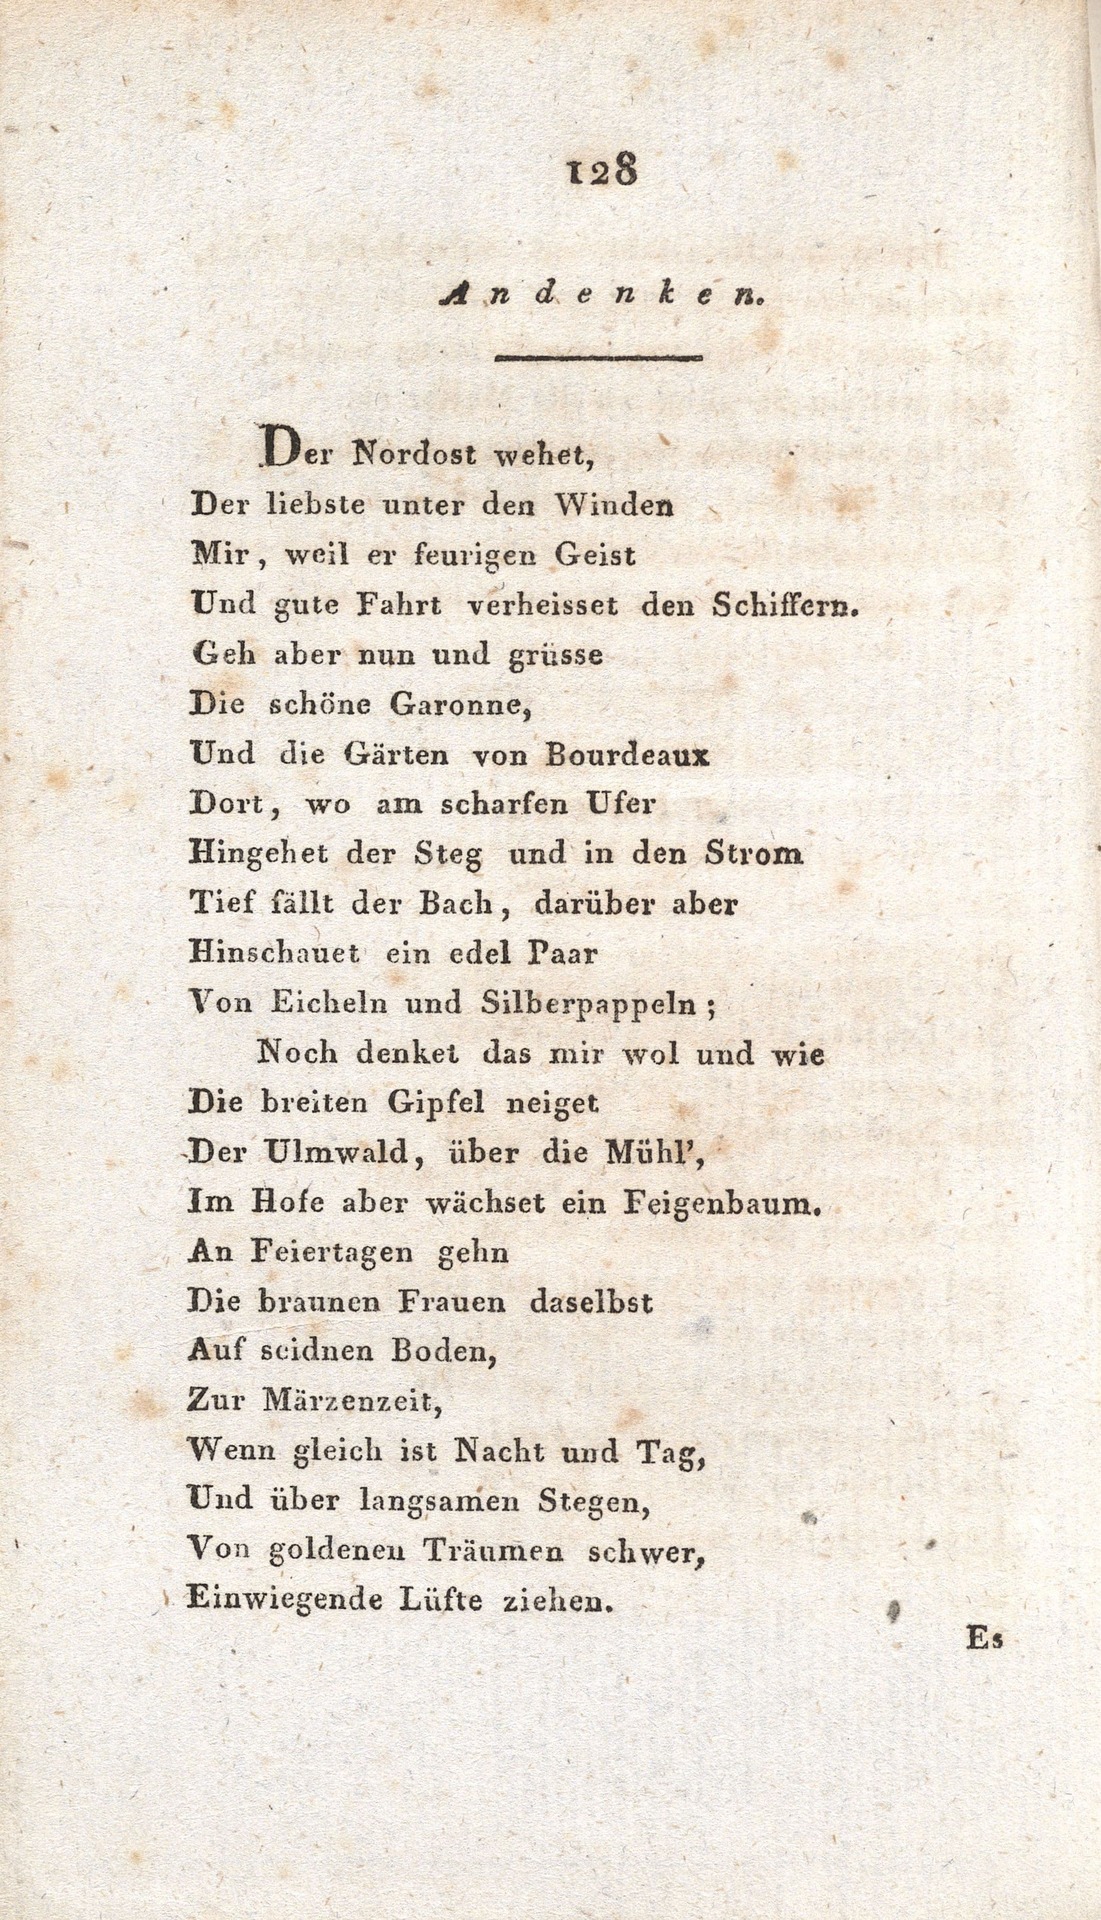 33a_Andenken, Seite 128 HA 1943.75.jpg